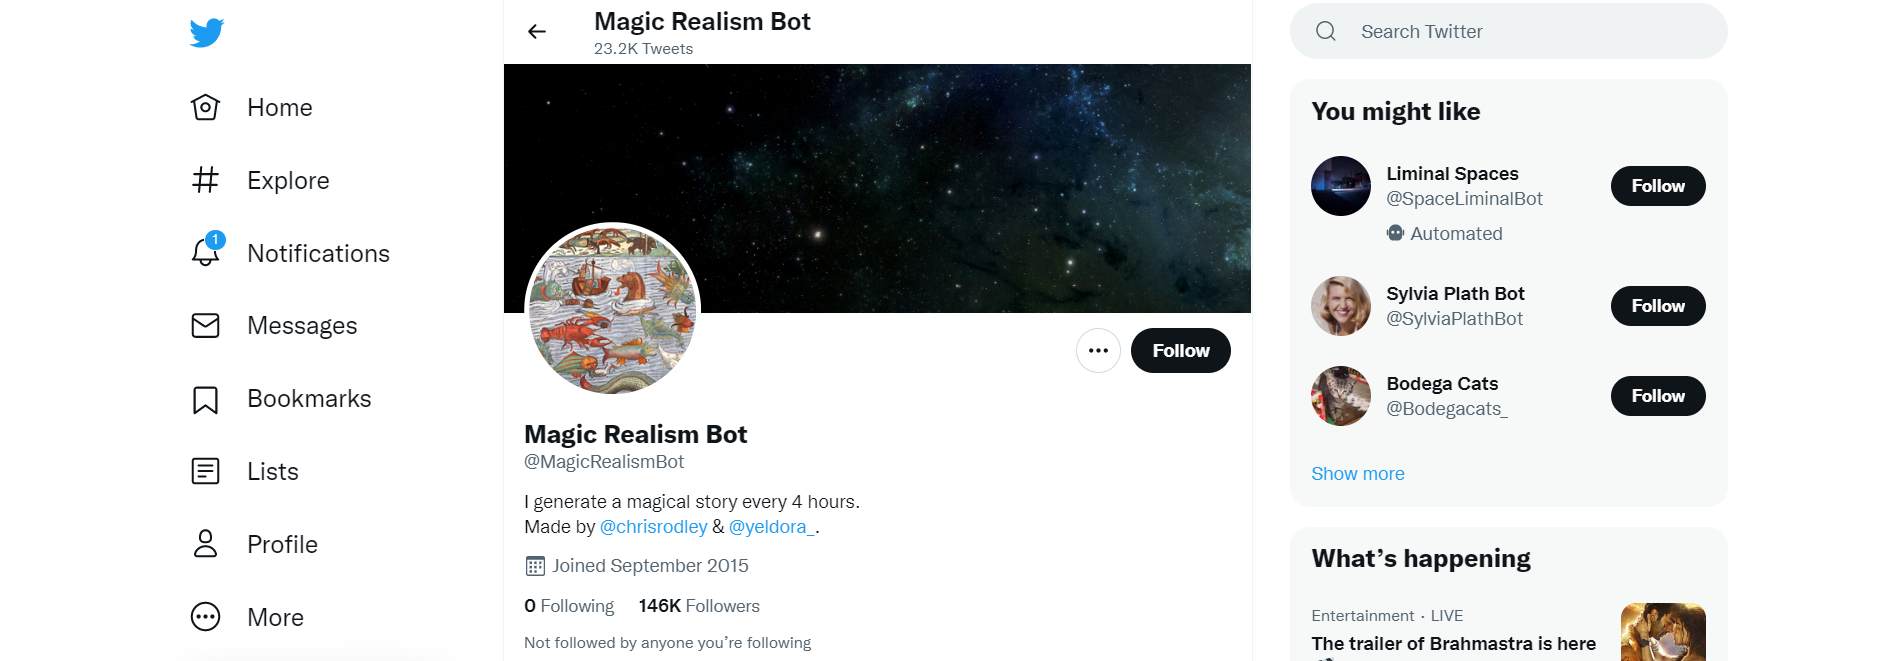 Magic Realism Bot